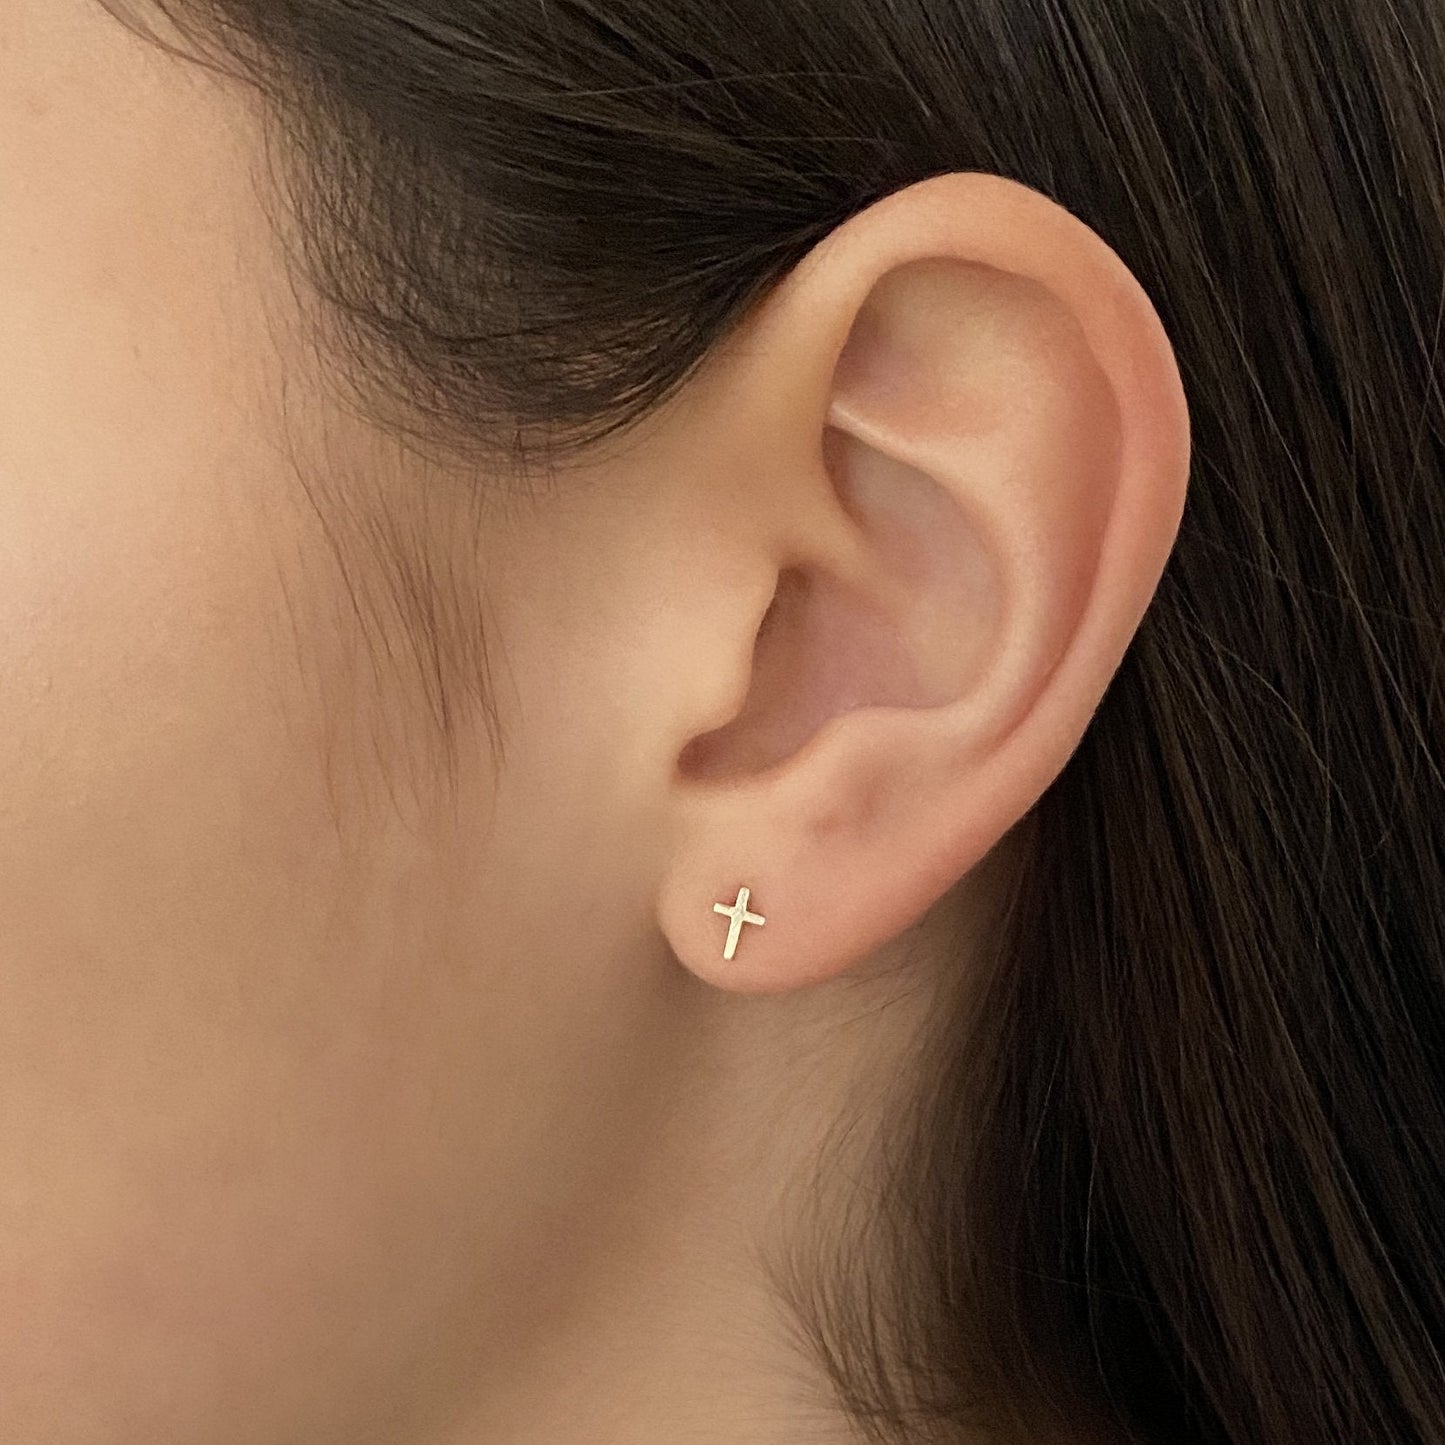 Cross Earrings in 14k Gold - Mazi New York-jewelry